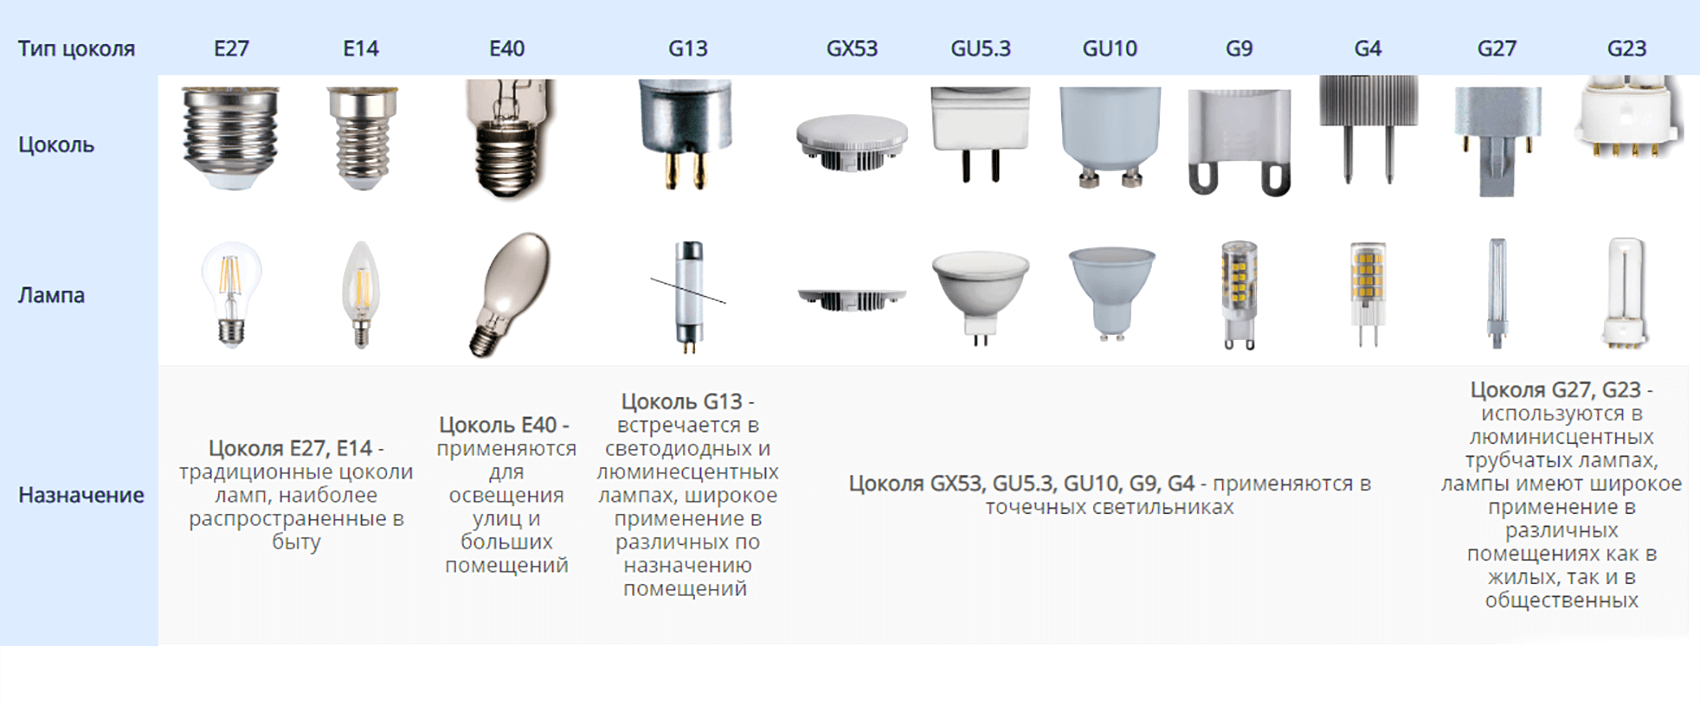 Что такое цоколь g9 для светодиодной и галогенной лампы?